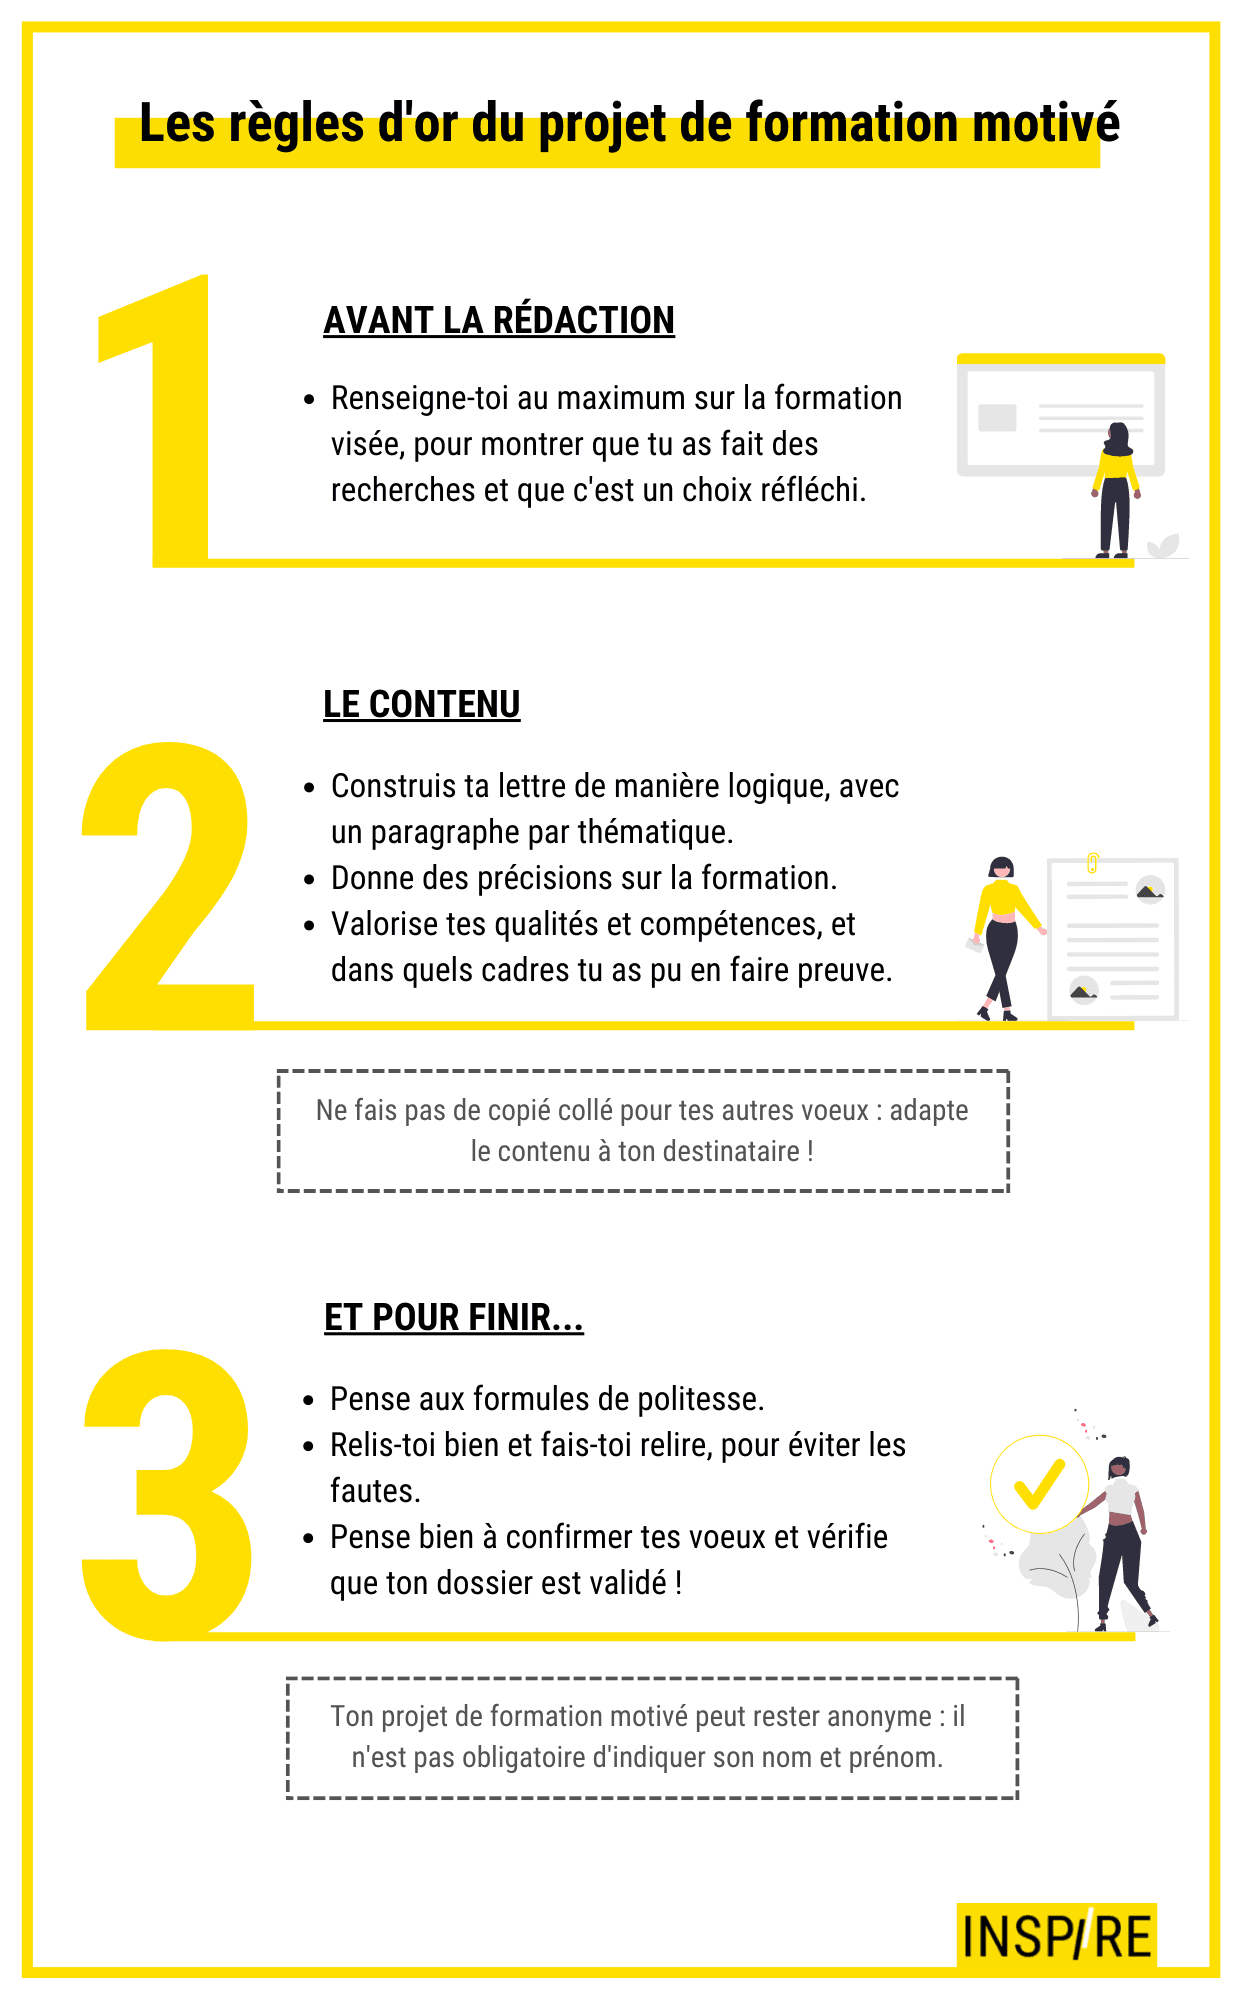 Infographie les règles d'or du projet de formation motivé